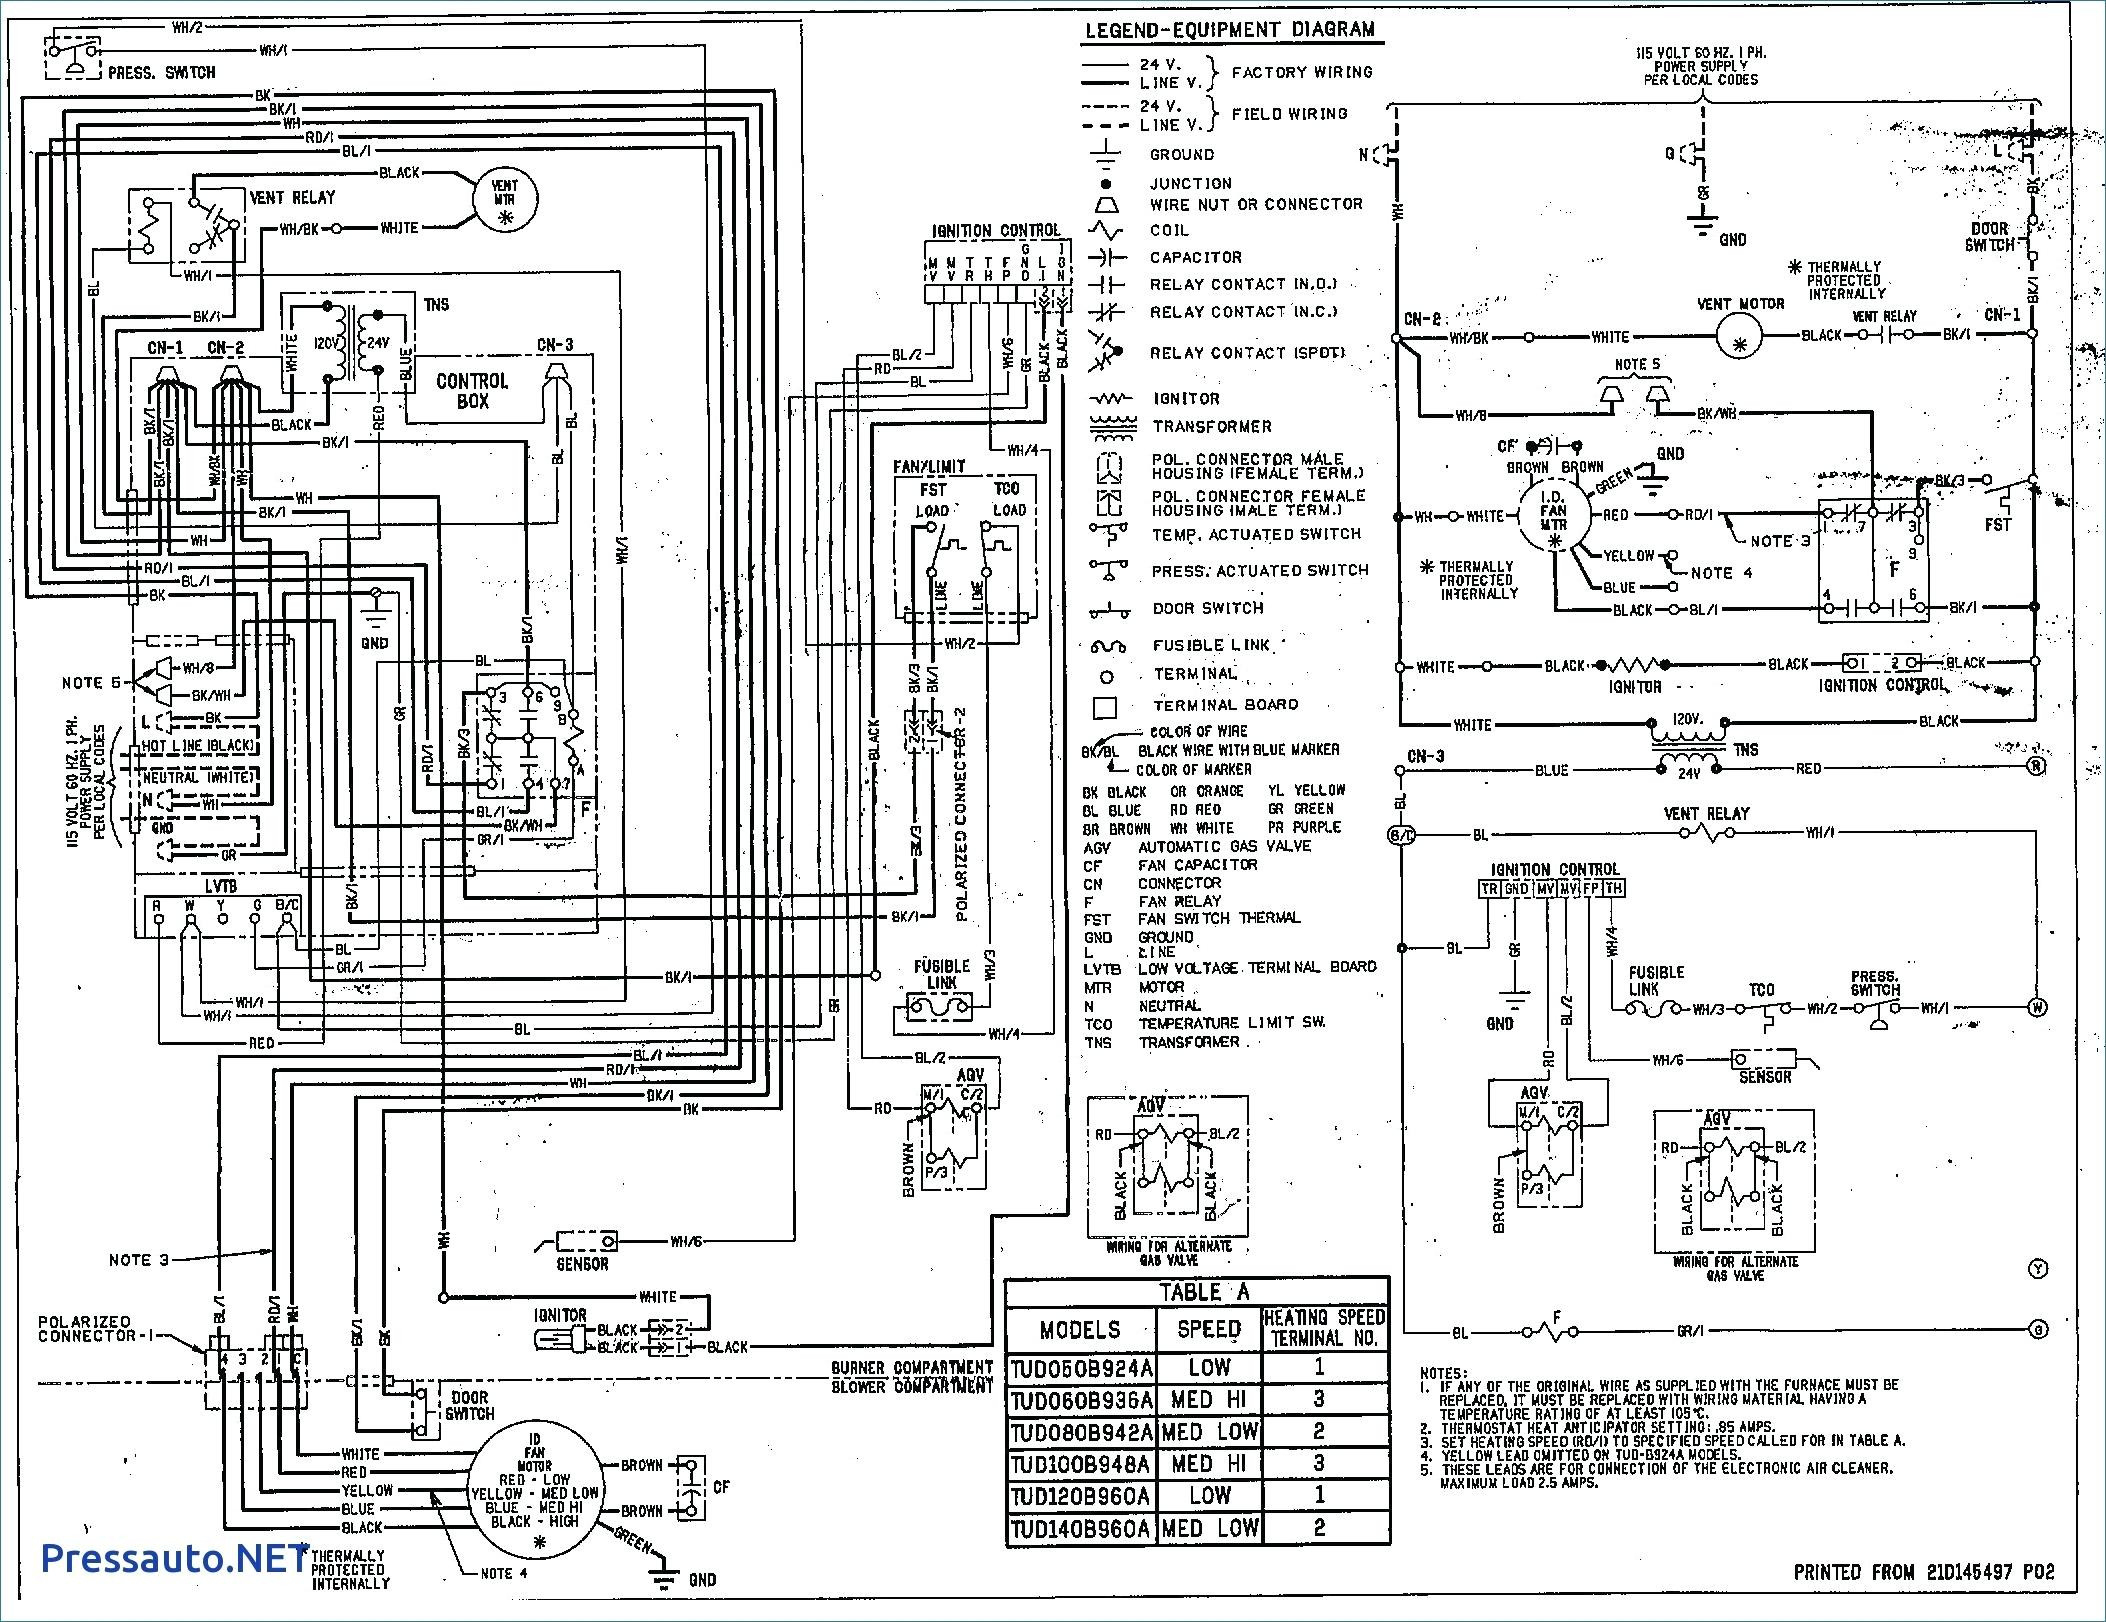 Trane Wiring Diagrams - Wiring Diagrams Hubs - Trane Thermostat Wiring Diagram